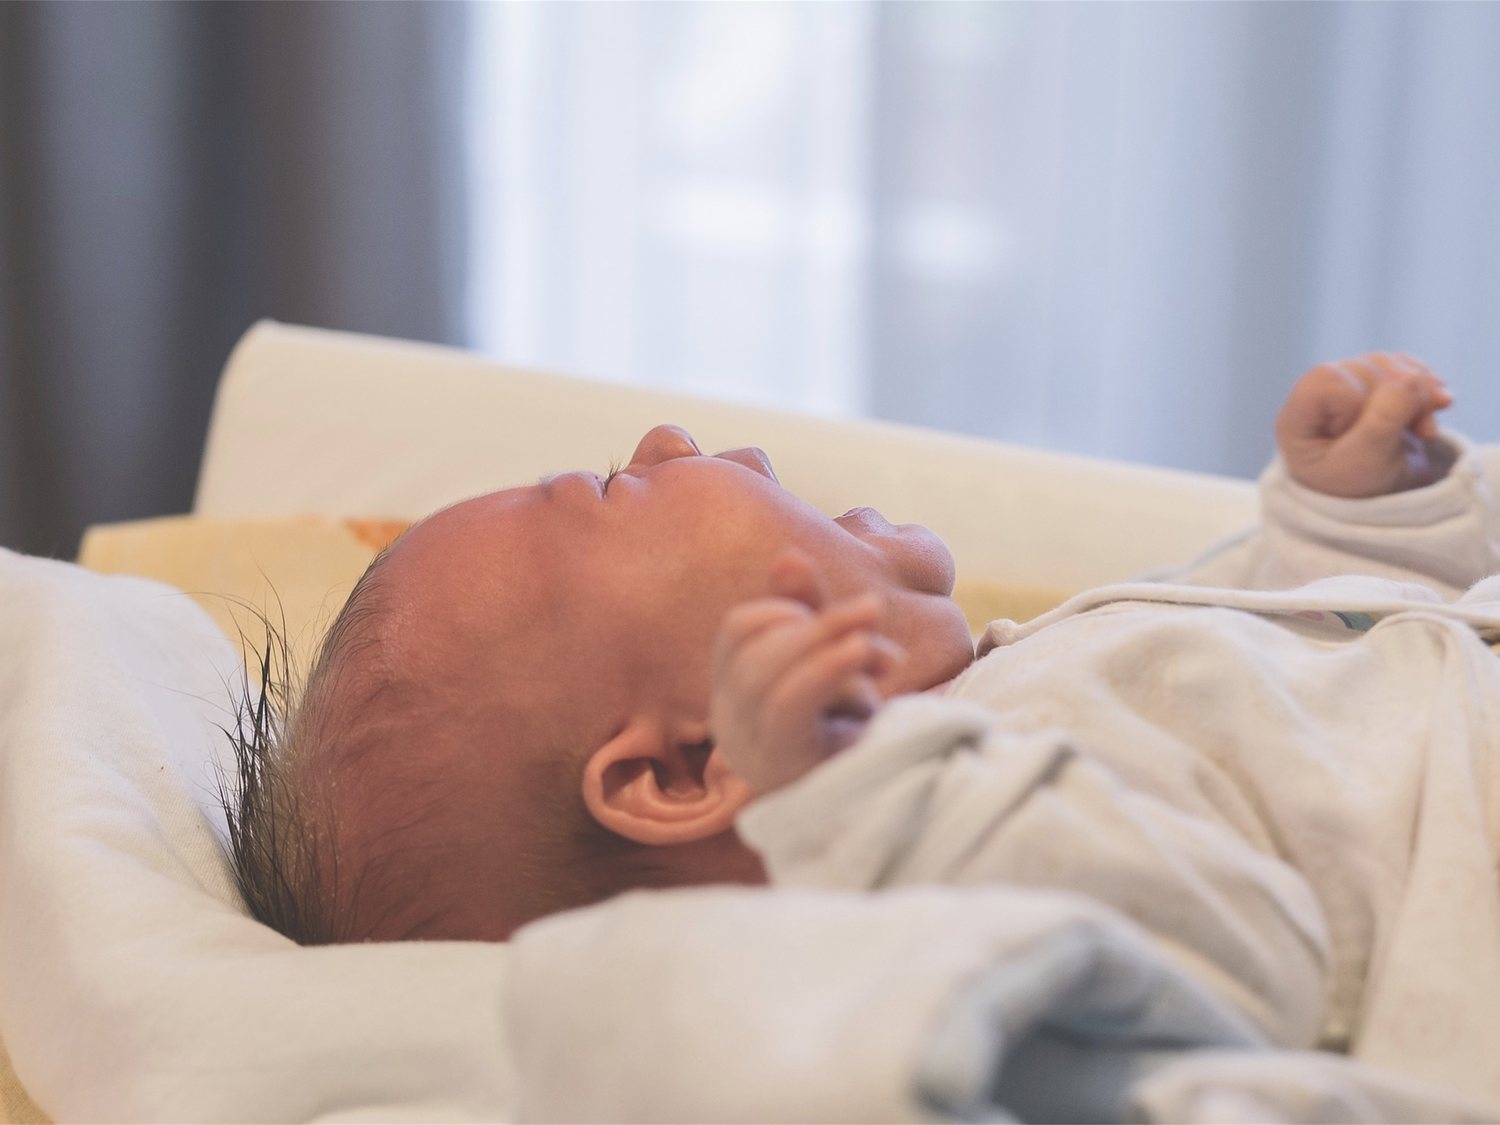 Una crema solar produce quemaduras químicas a un bebé de 14 meses